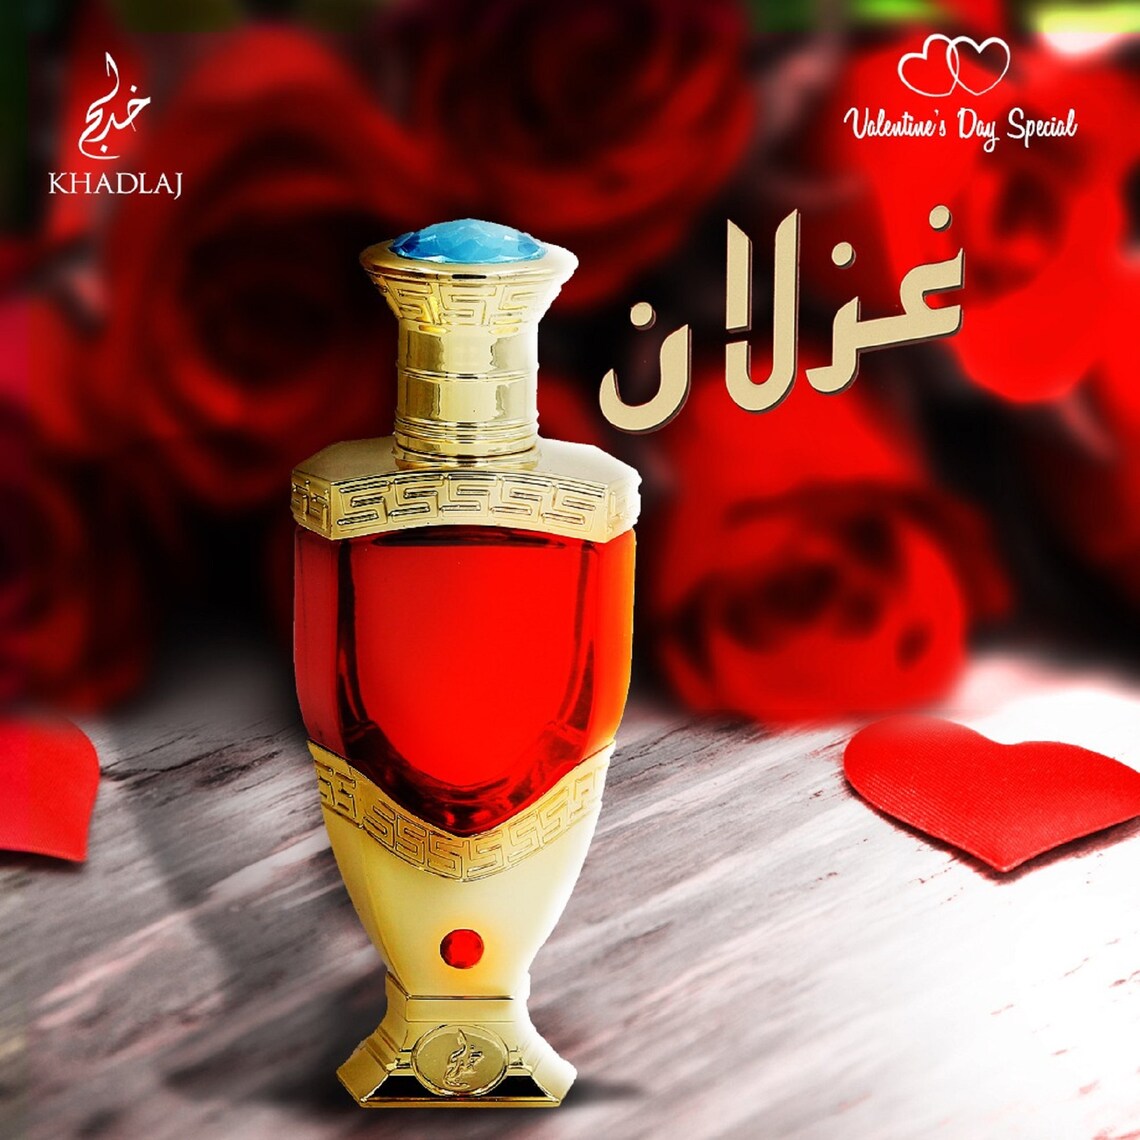 Ghazlaan Premium Arabian Perfume Oil - Rosy & Ambery Fragrance Designer Handmade Bottle Hair Oil 20ML